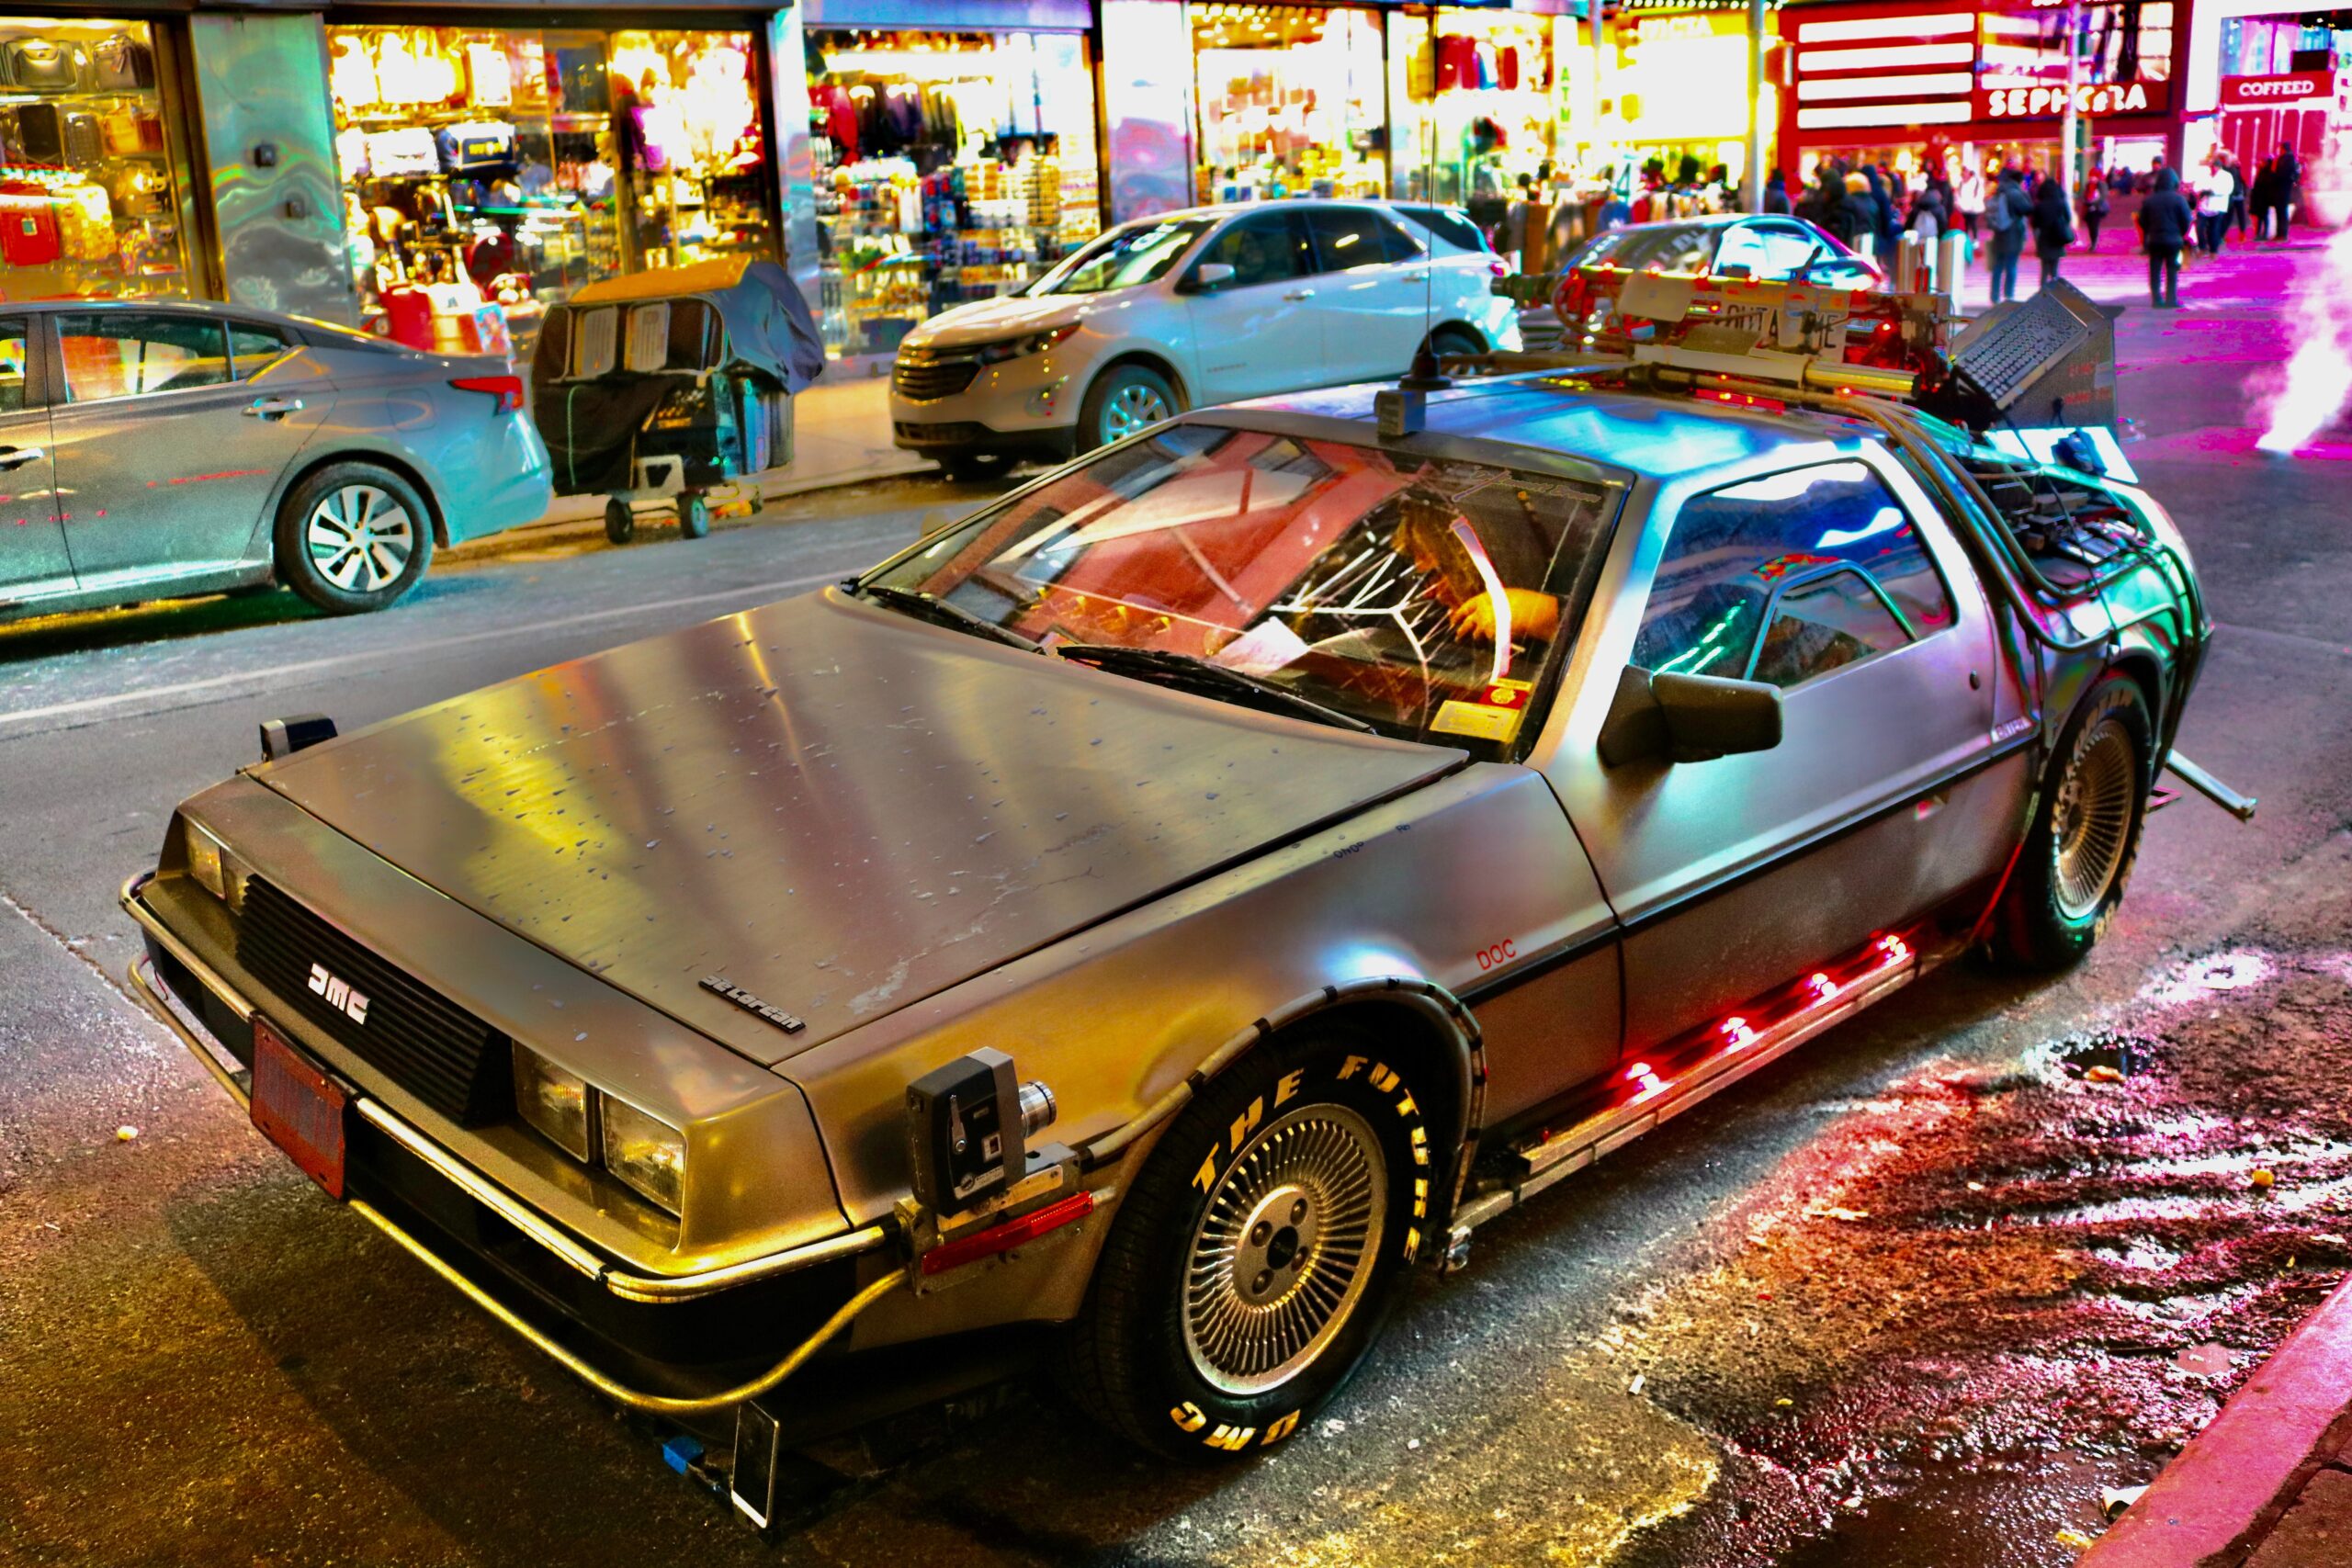 replica of the Back to the Future DeLorean car